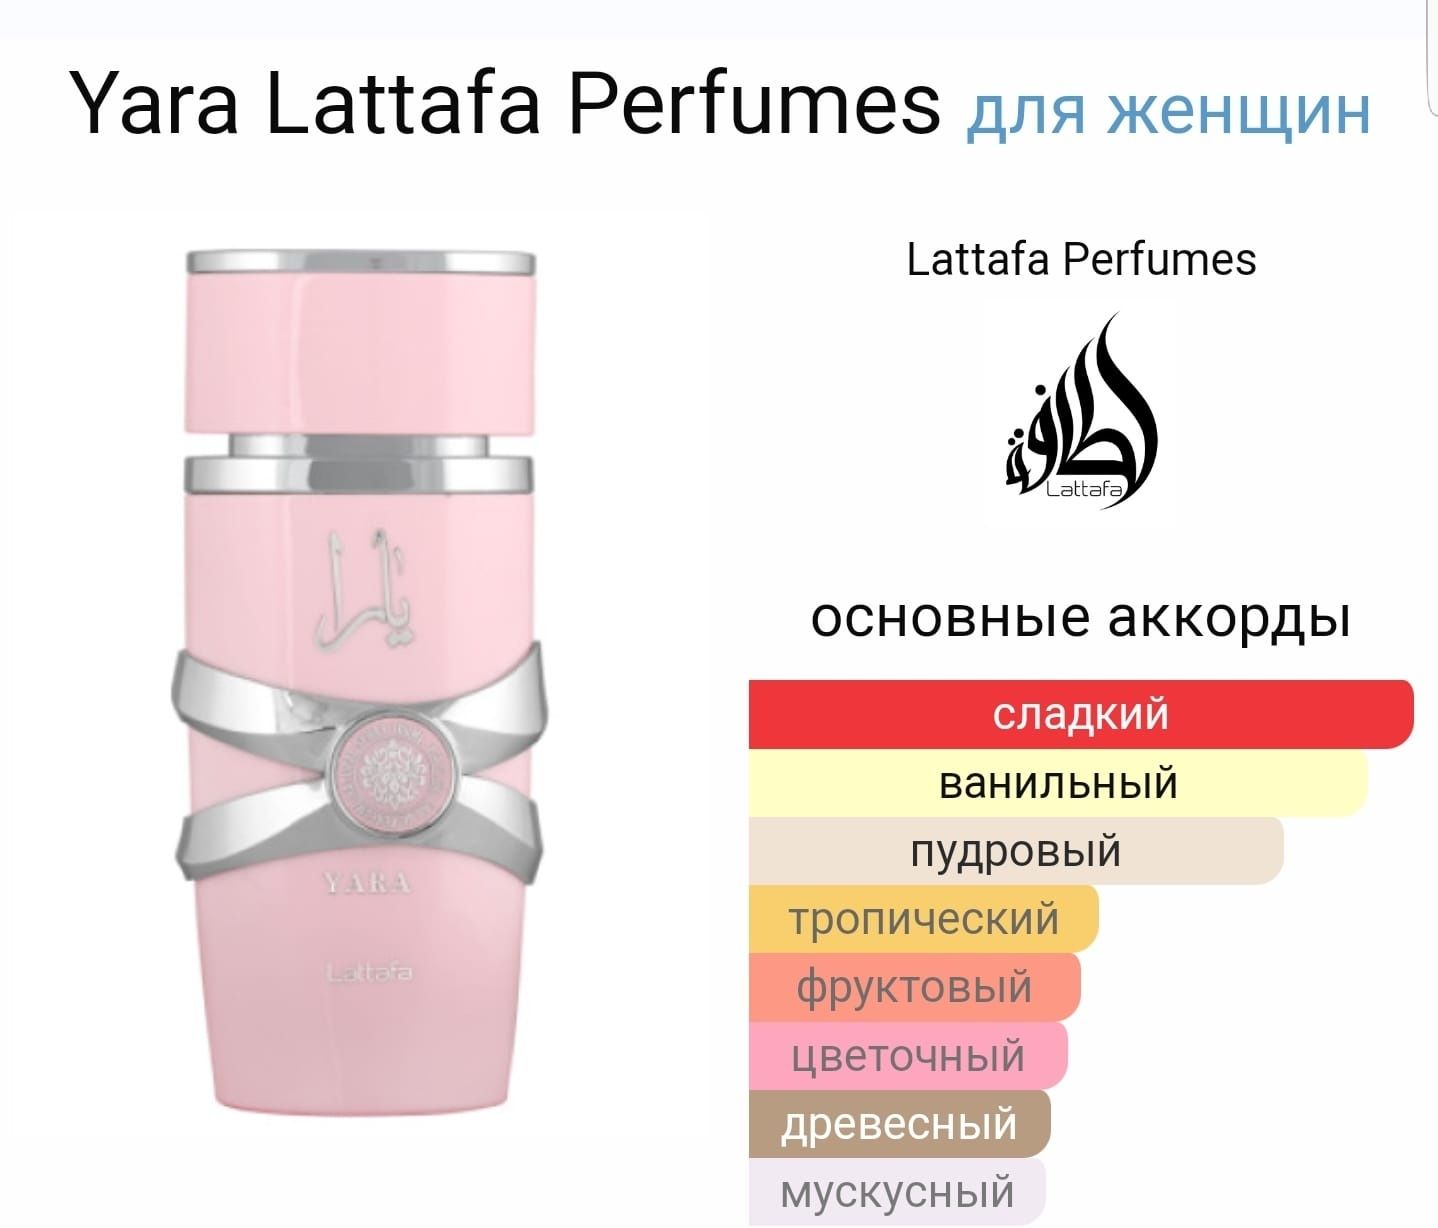 В наличии!Качественный арабский парфюм на распив! От 150тг за 1мл